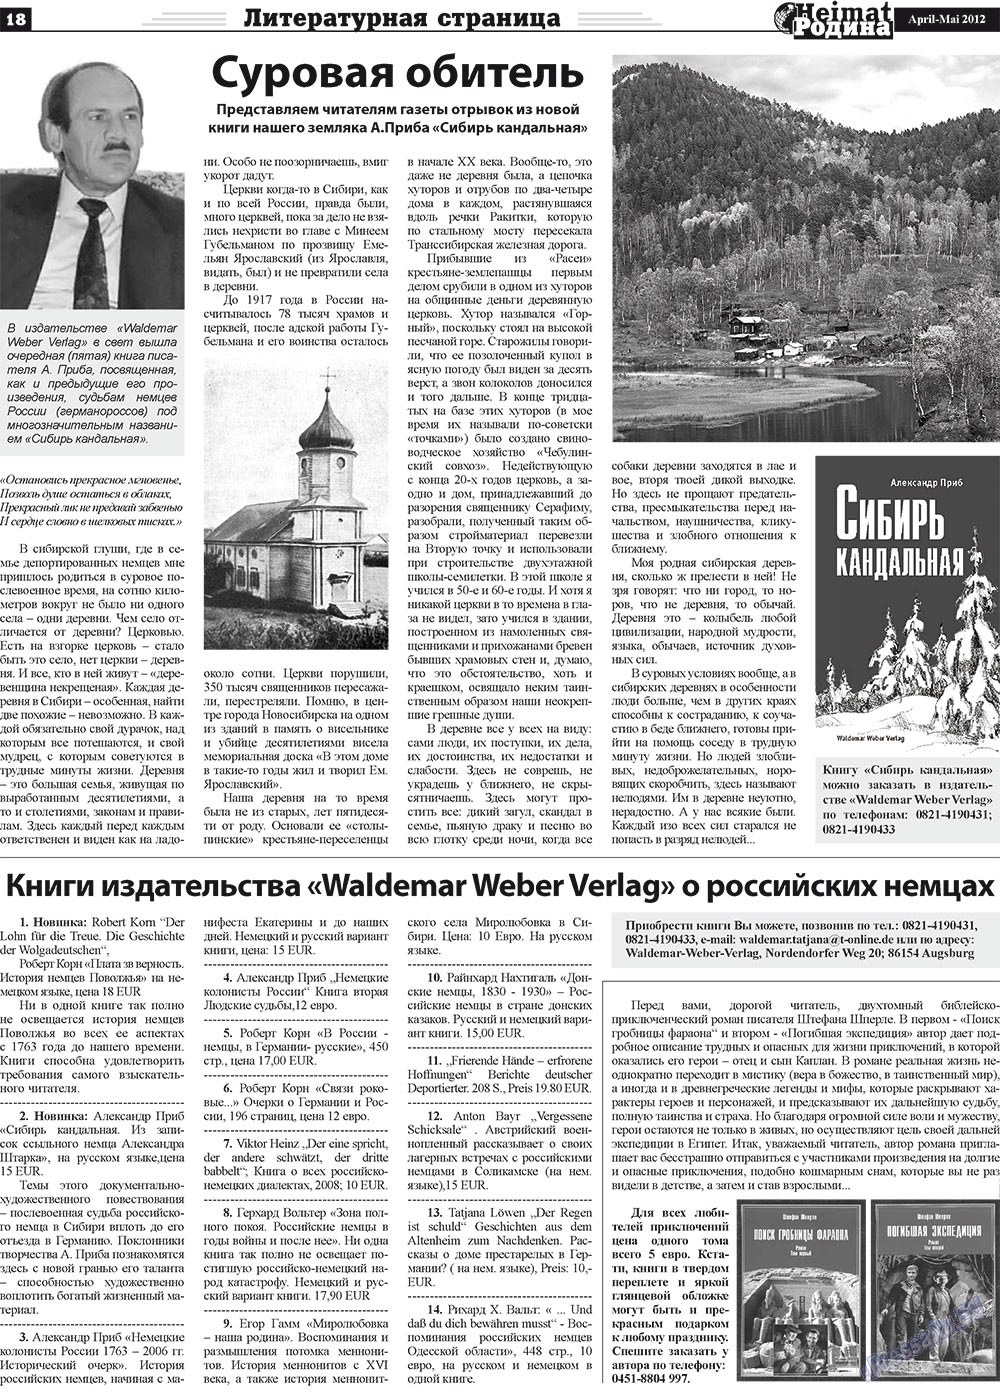 Heimat-Родина (газета). 2012 год, номер 4, стр. 18